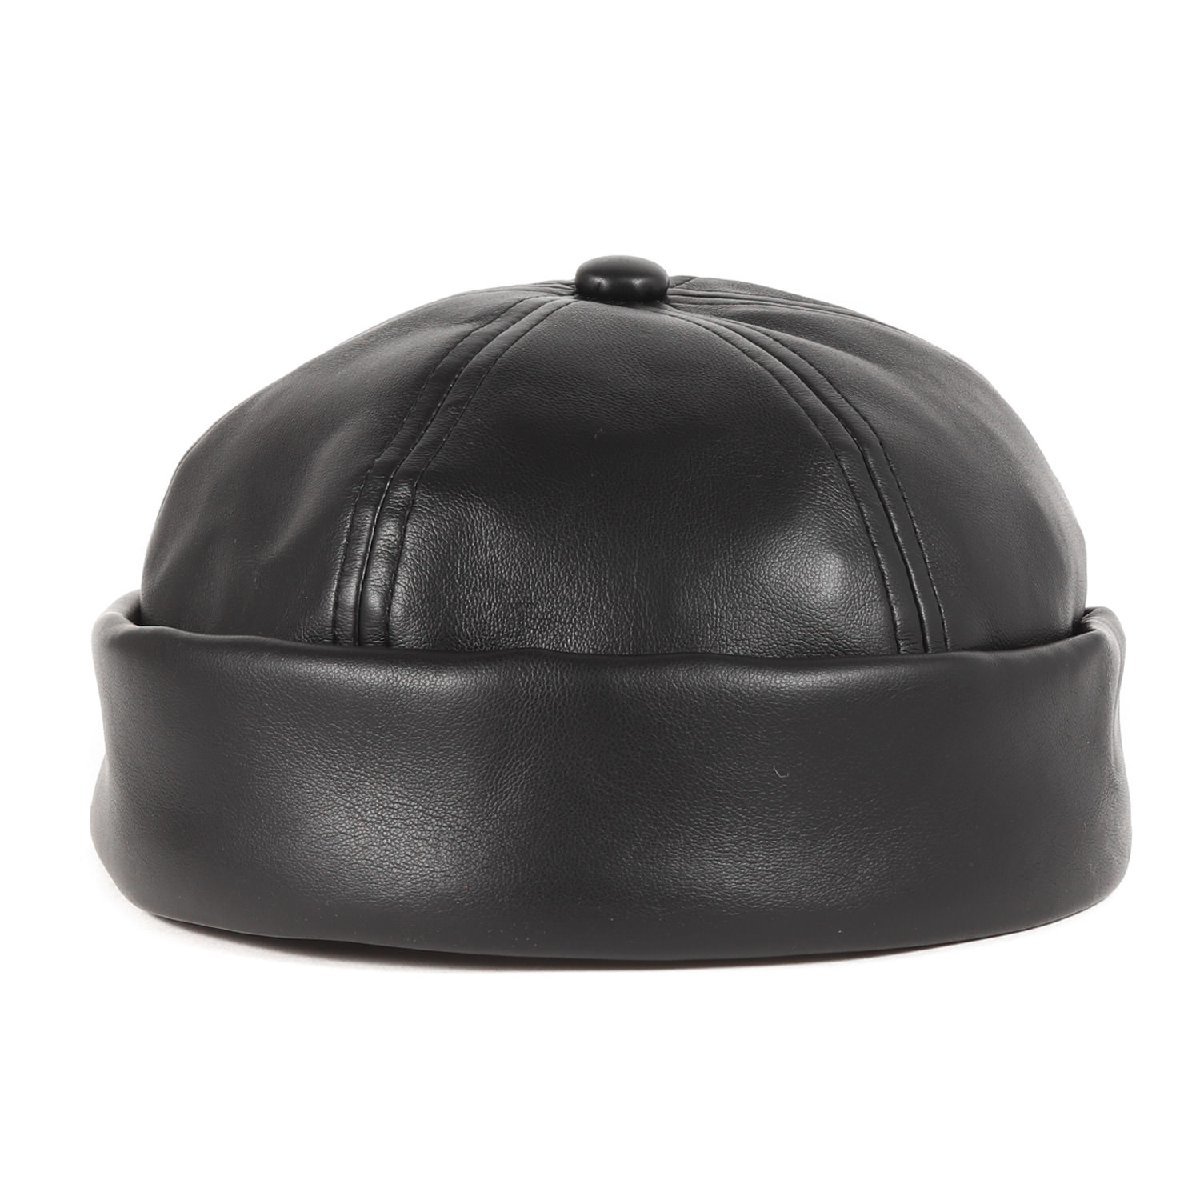 美品 COOTIE クーティー キャップ サイズ:FREE 22SS フェイクレザー サグ キャップ Fake Leather Thug Cap ブラック 黒 帽子 カジュアル